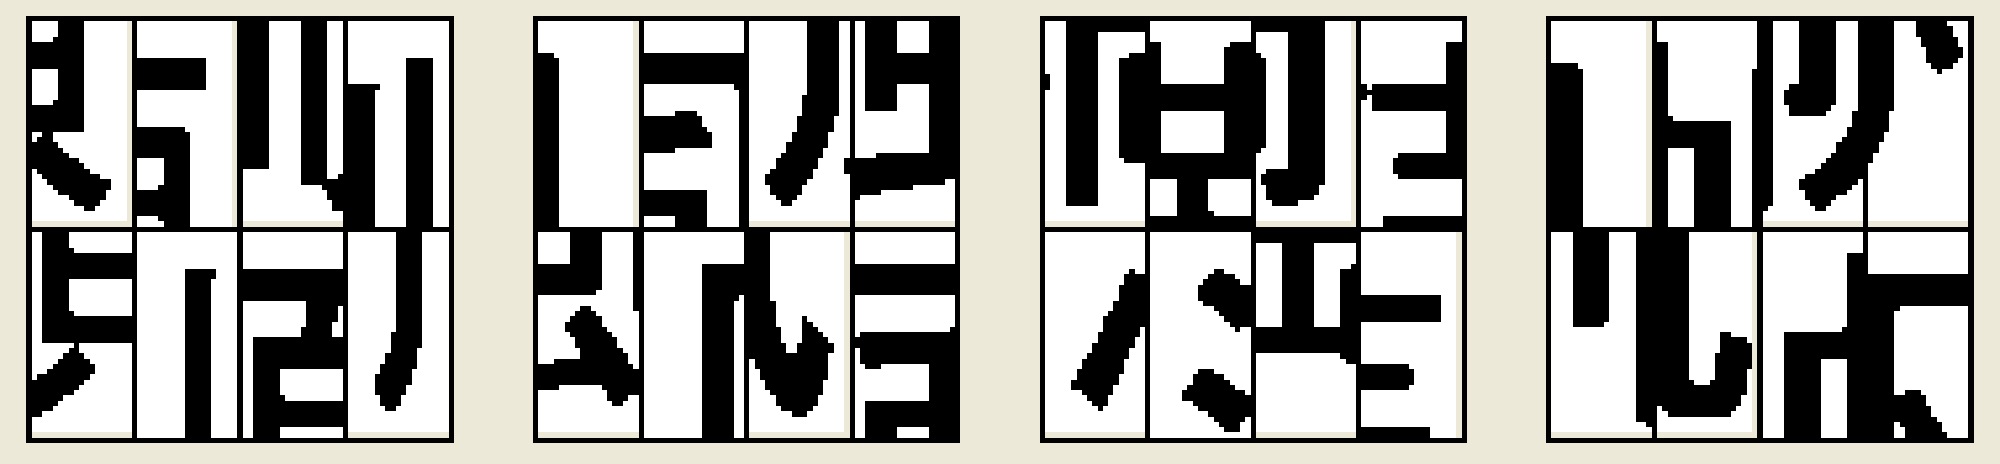 カテゴリー 漢字ジグソーパズル ４文字熟語 紙一枚で脳トレ 数独と迷路とパズルぬり絵で頭の体操